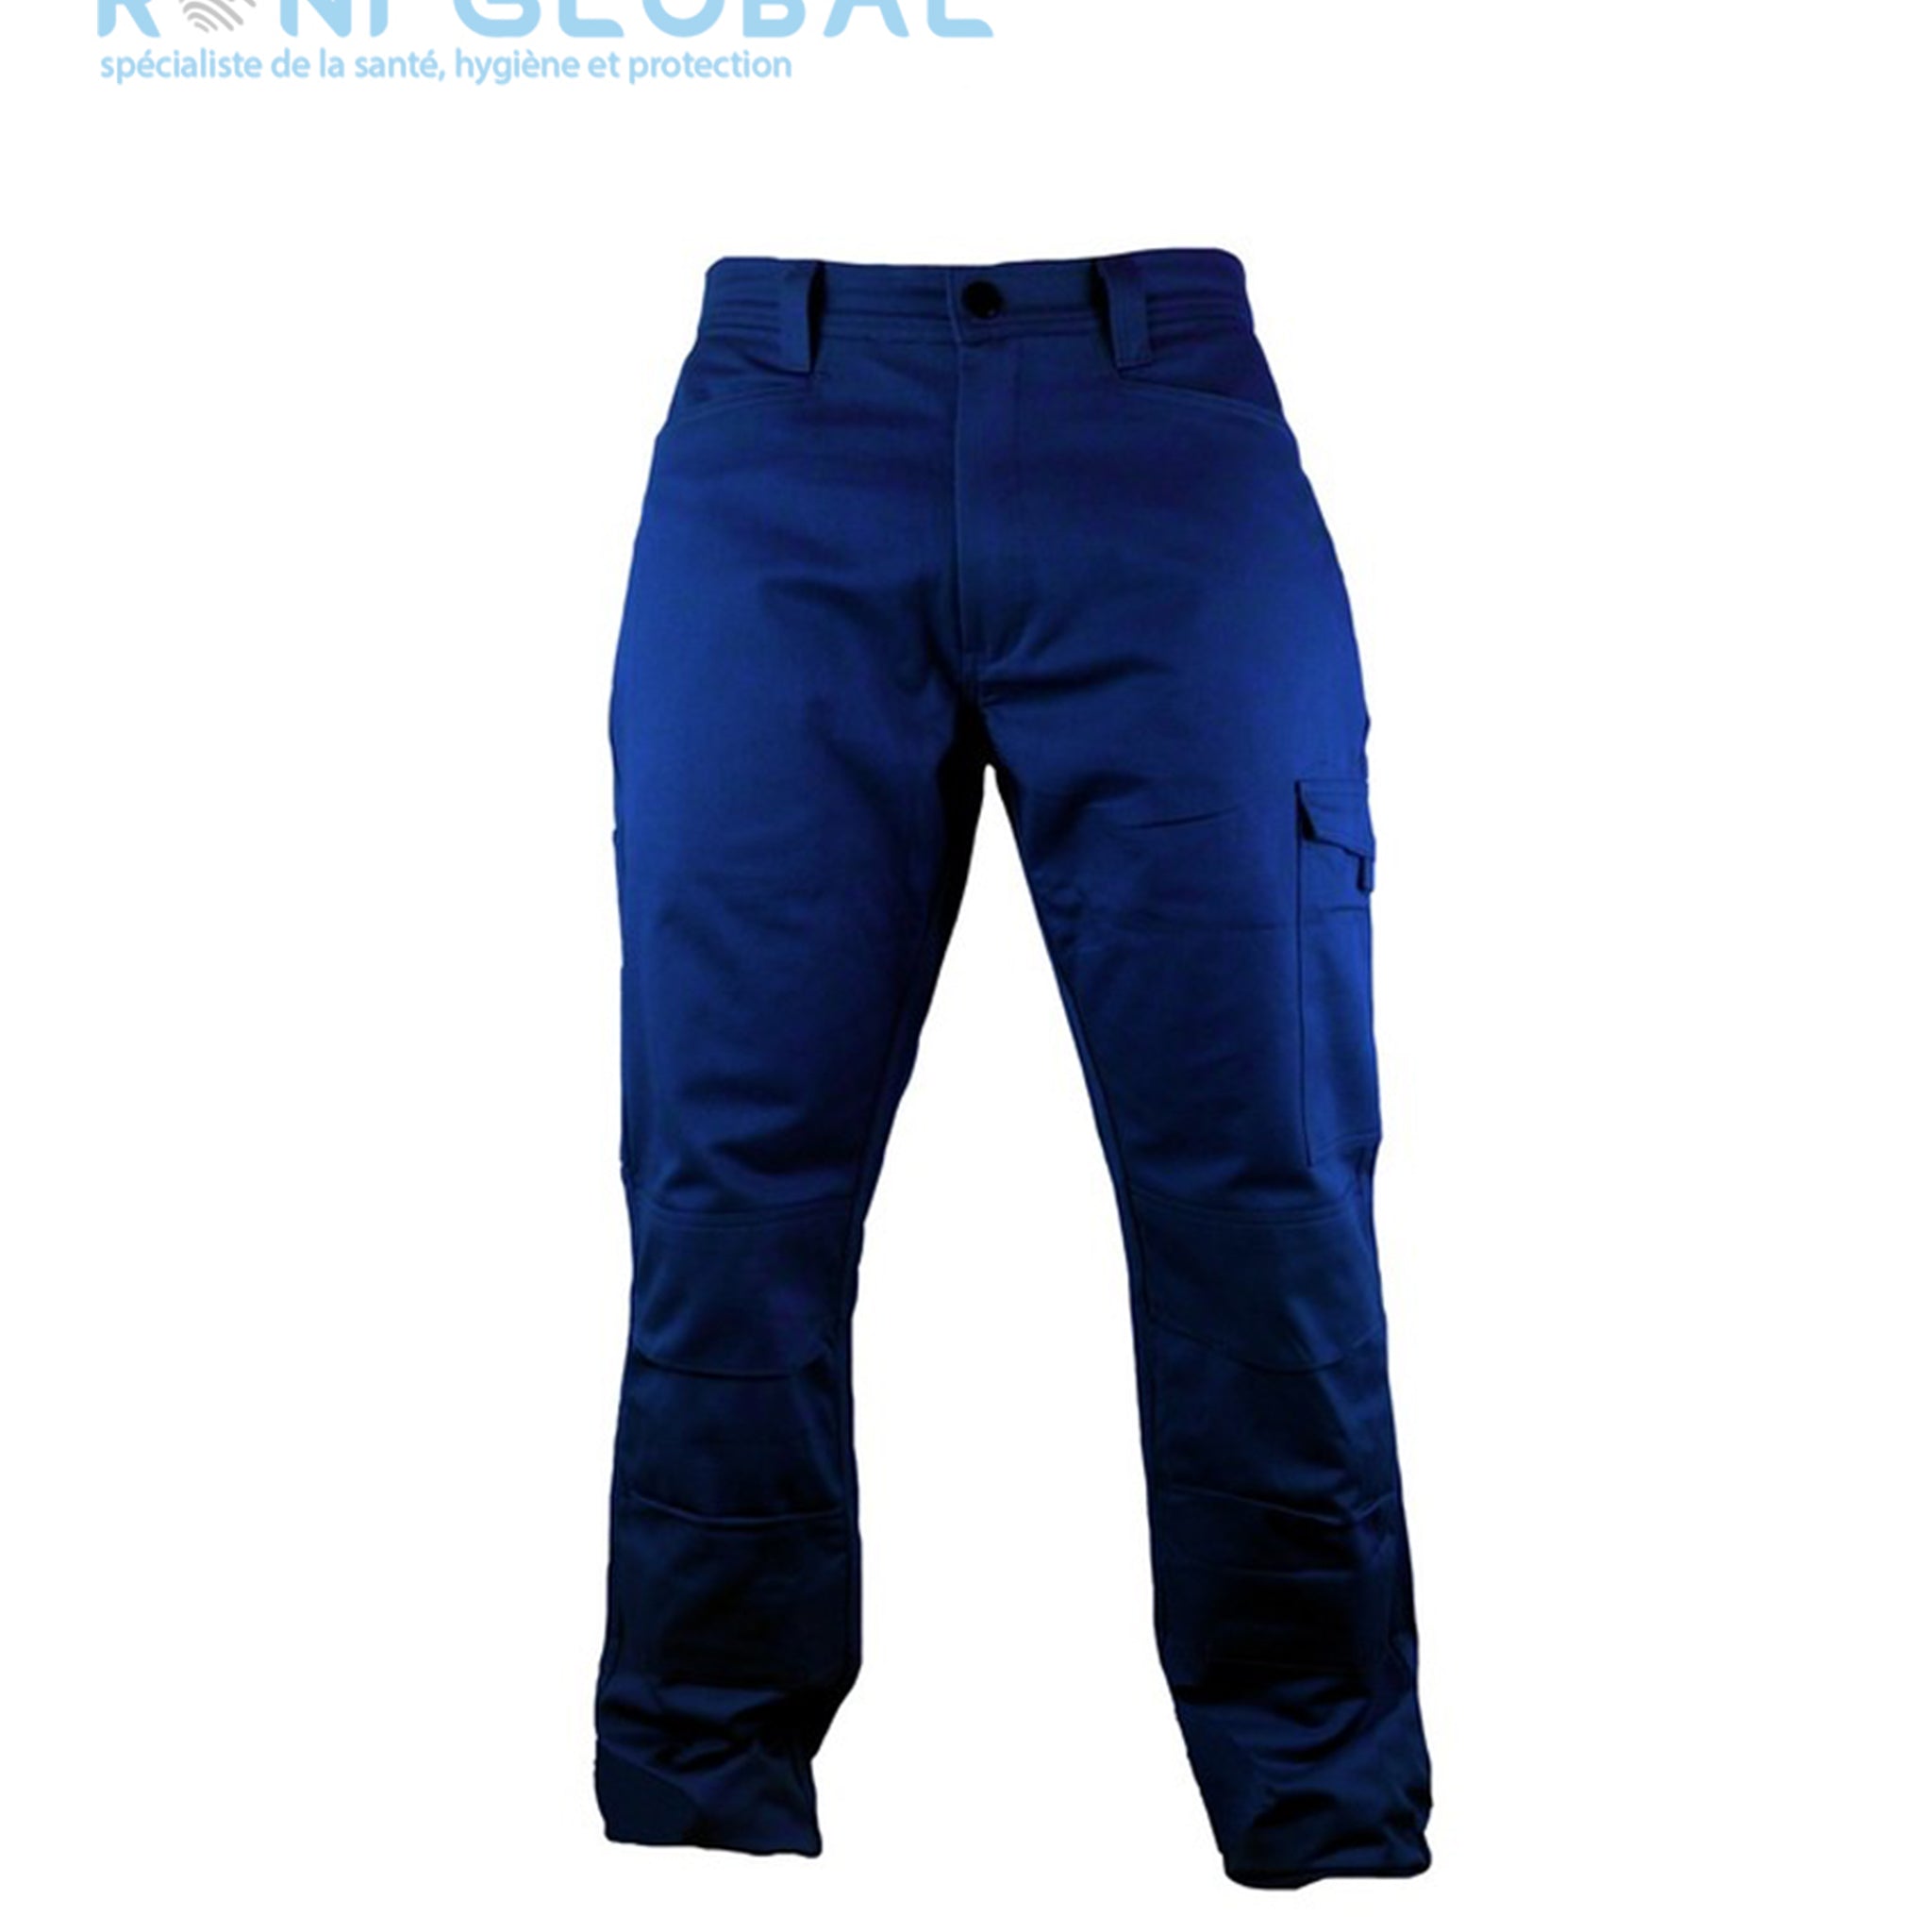 Pantalon de travail marine avec poches genoux, en coton sans métal et 5 poches - PANTALON PG EVO COTON MARINE PBV